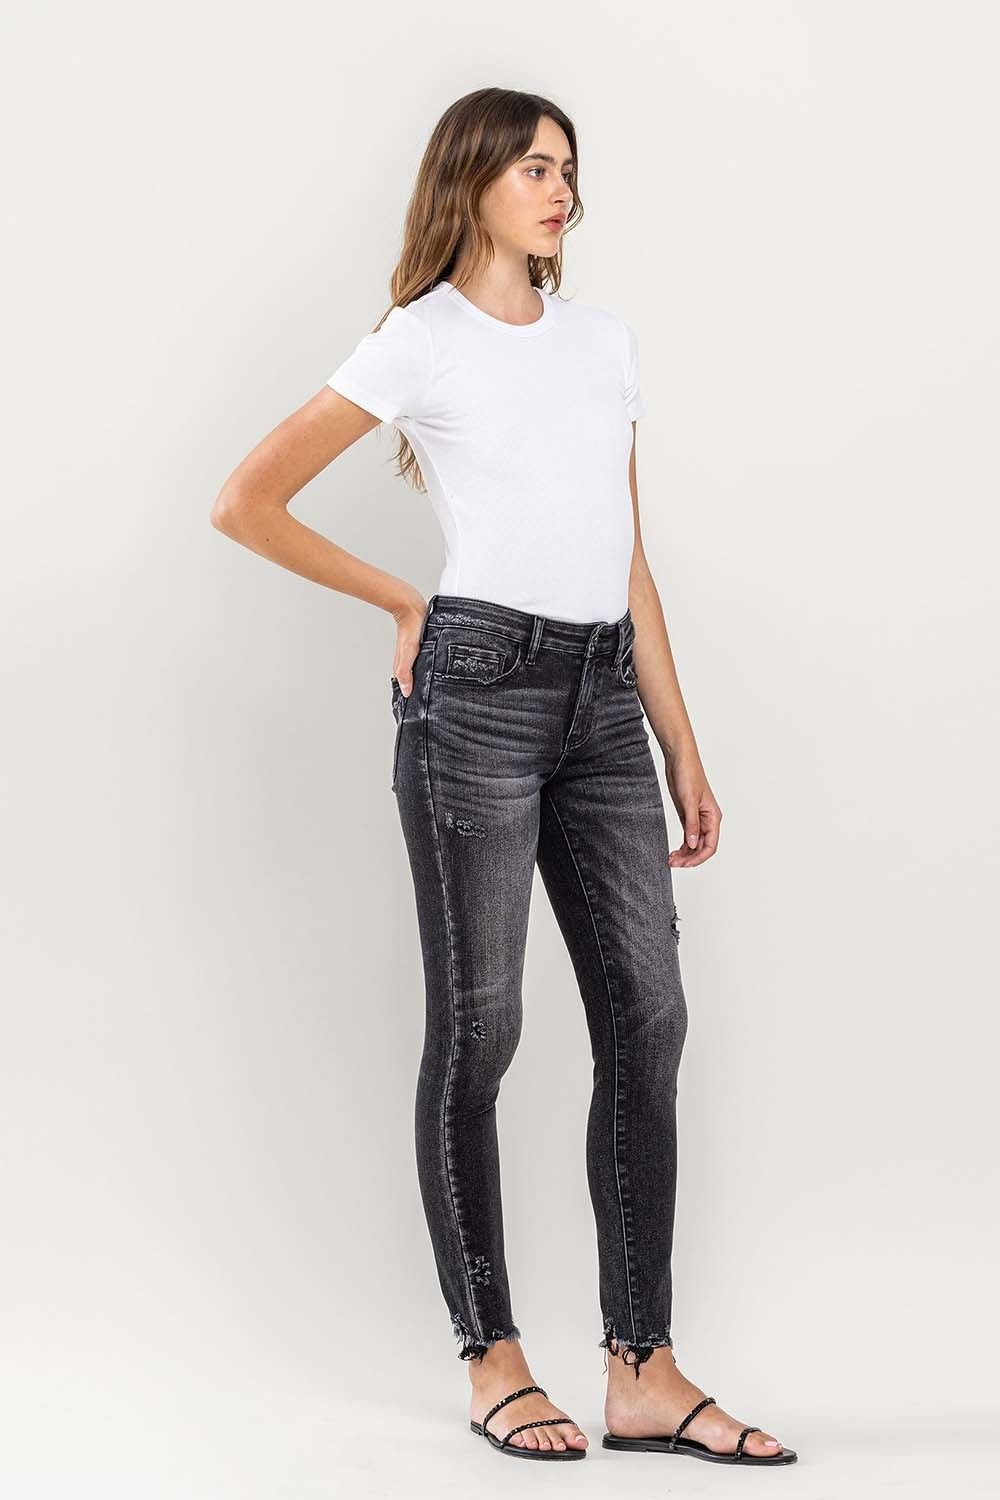 Lovervet Ashe Cropped Skinny Jeans